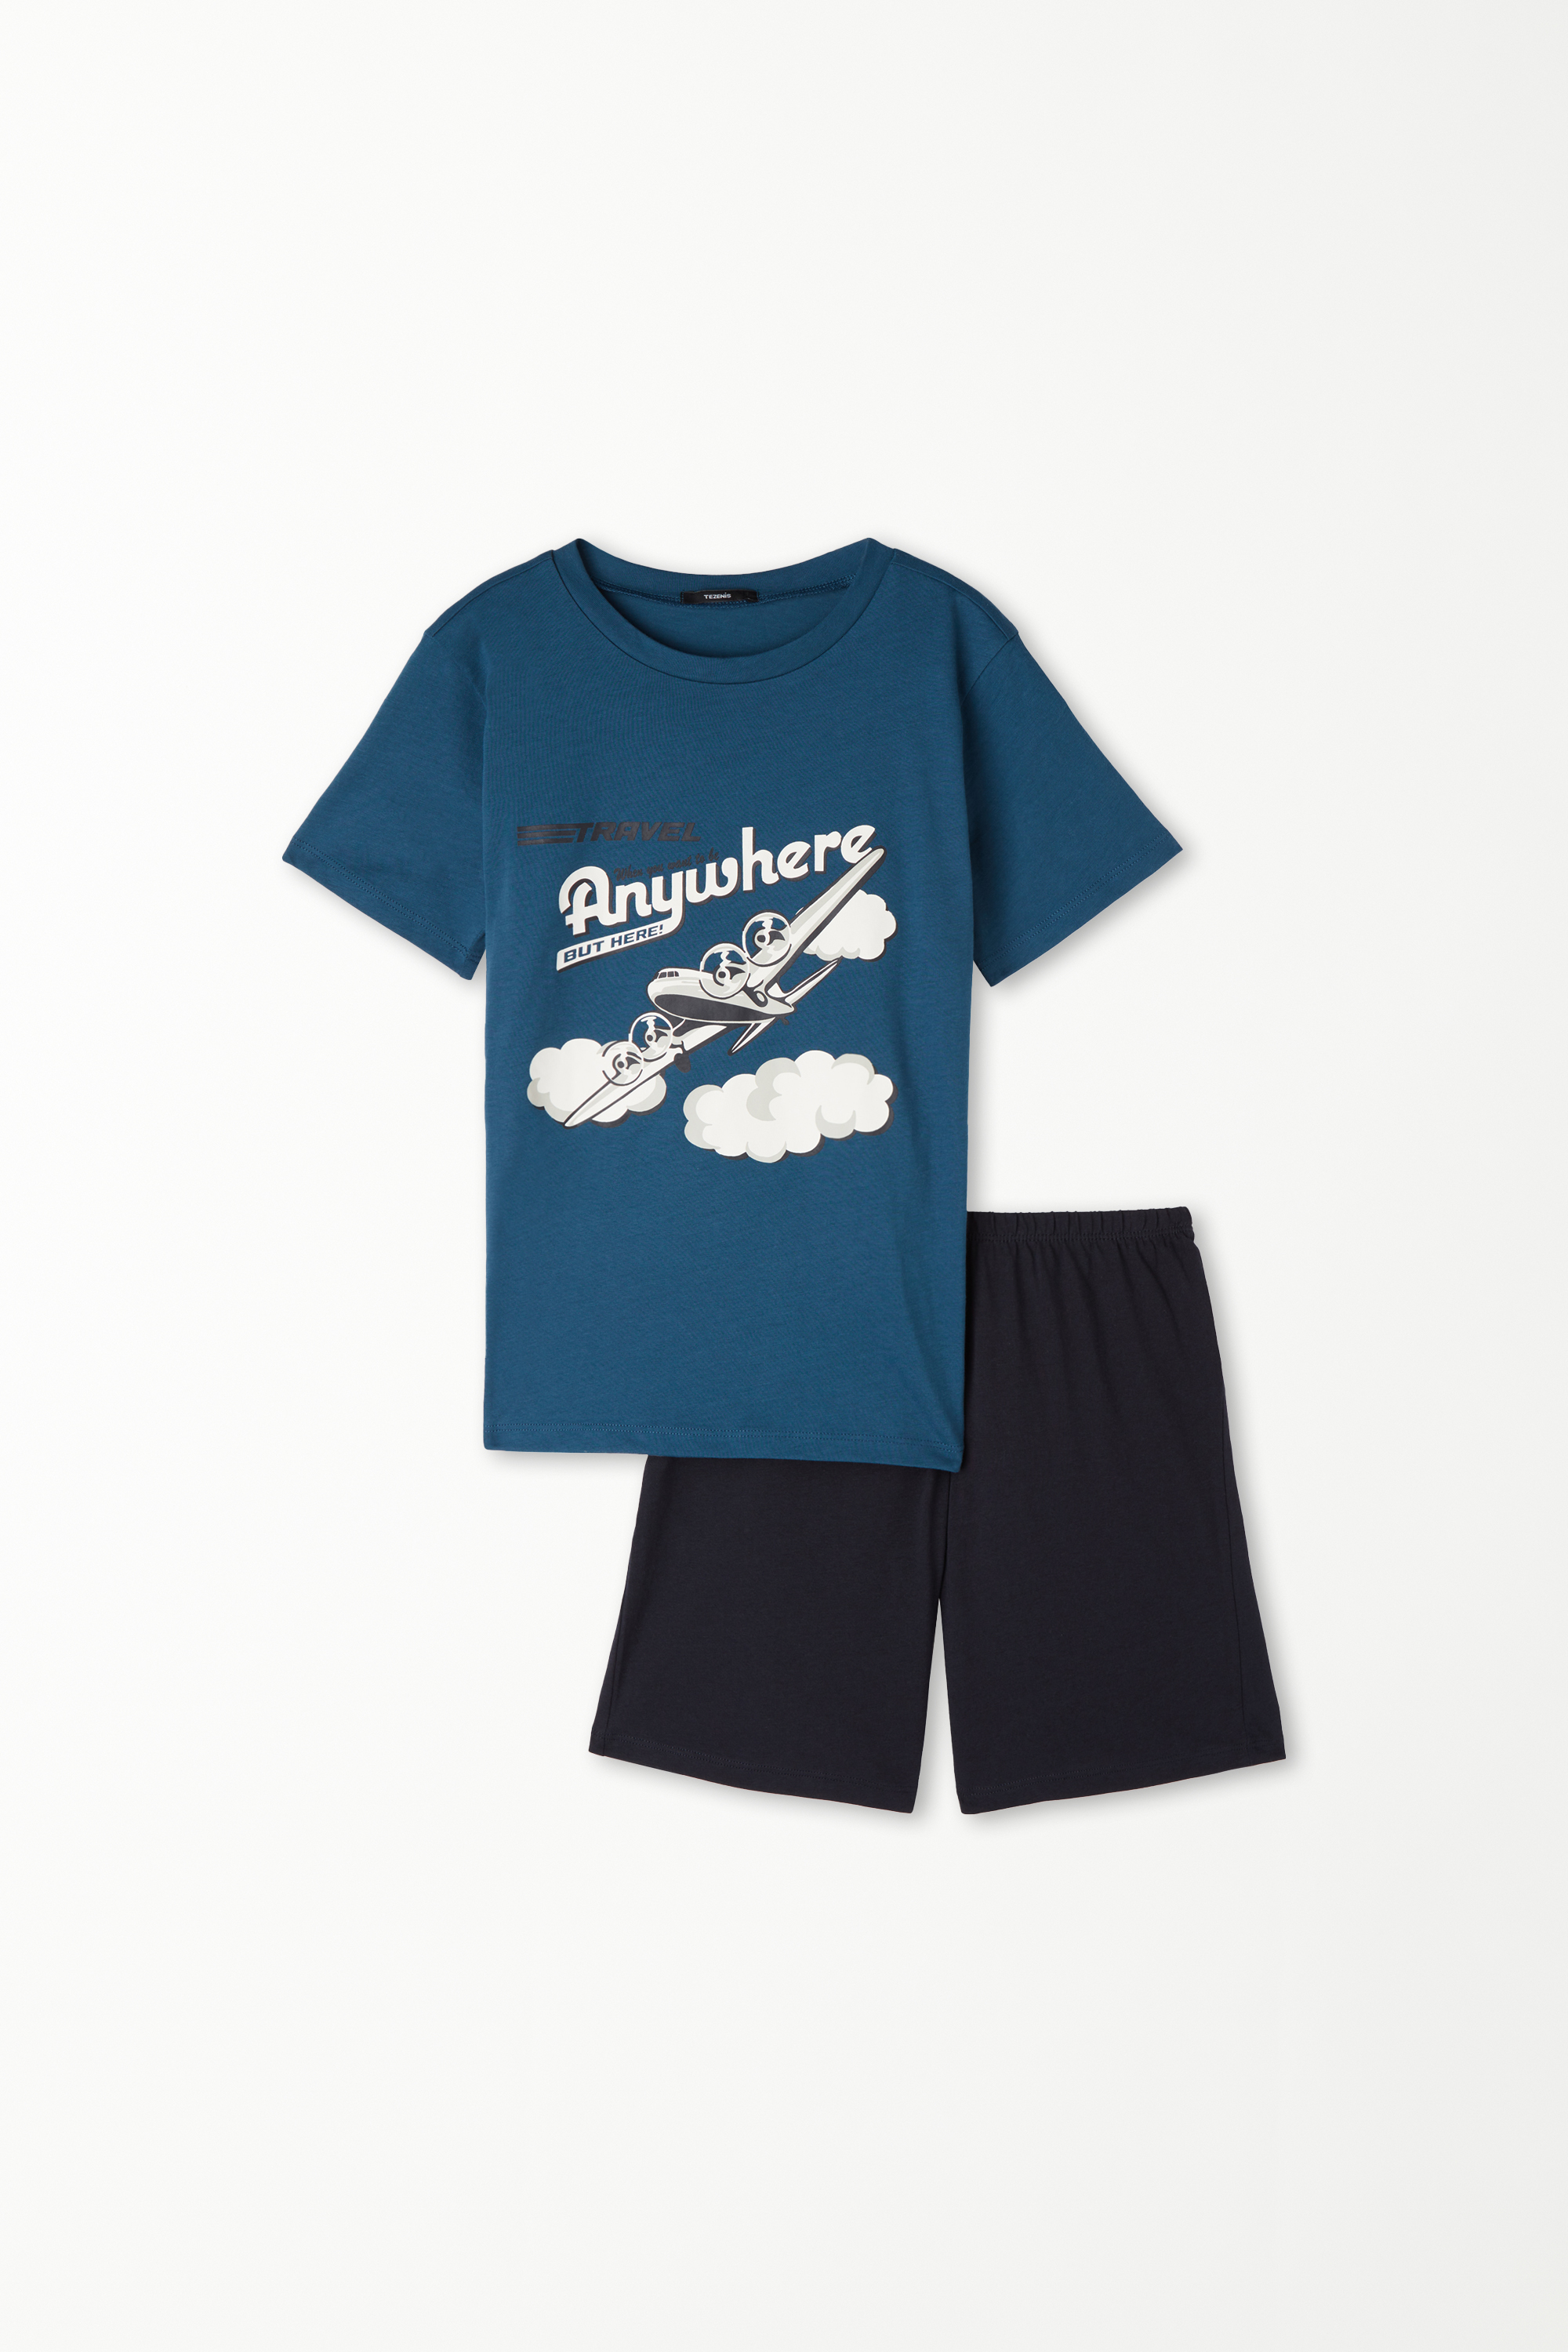 Kurzer Bauwollpyjama mit Halbarm und Flugzeug-Print für Jungen